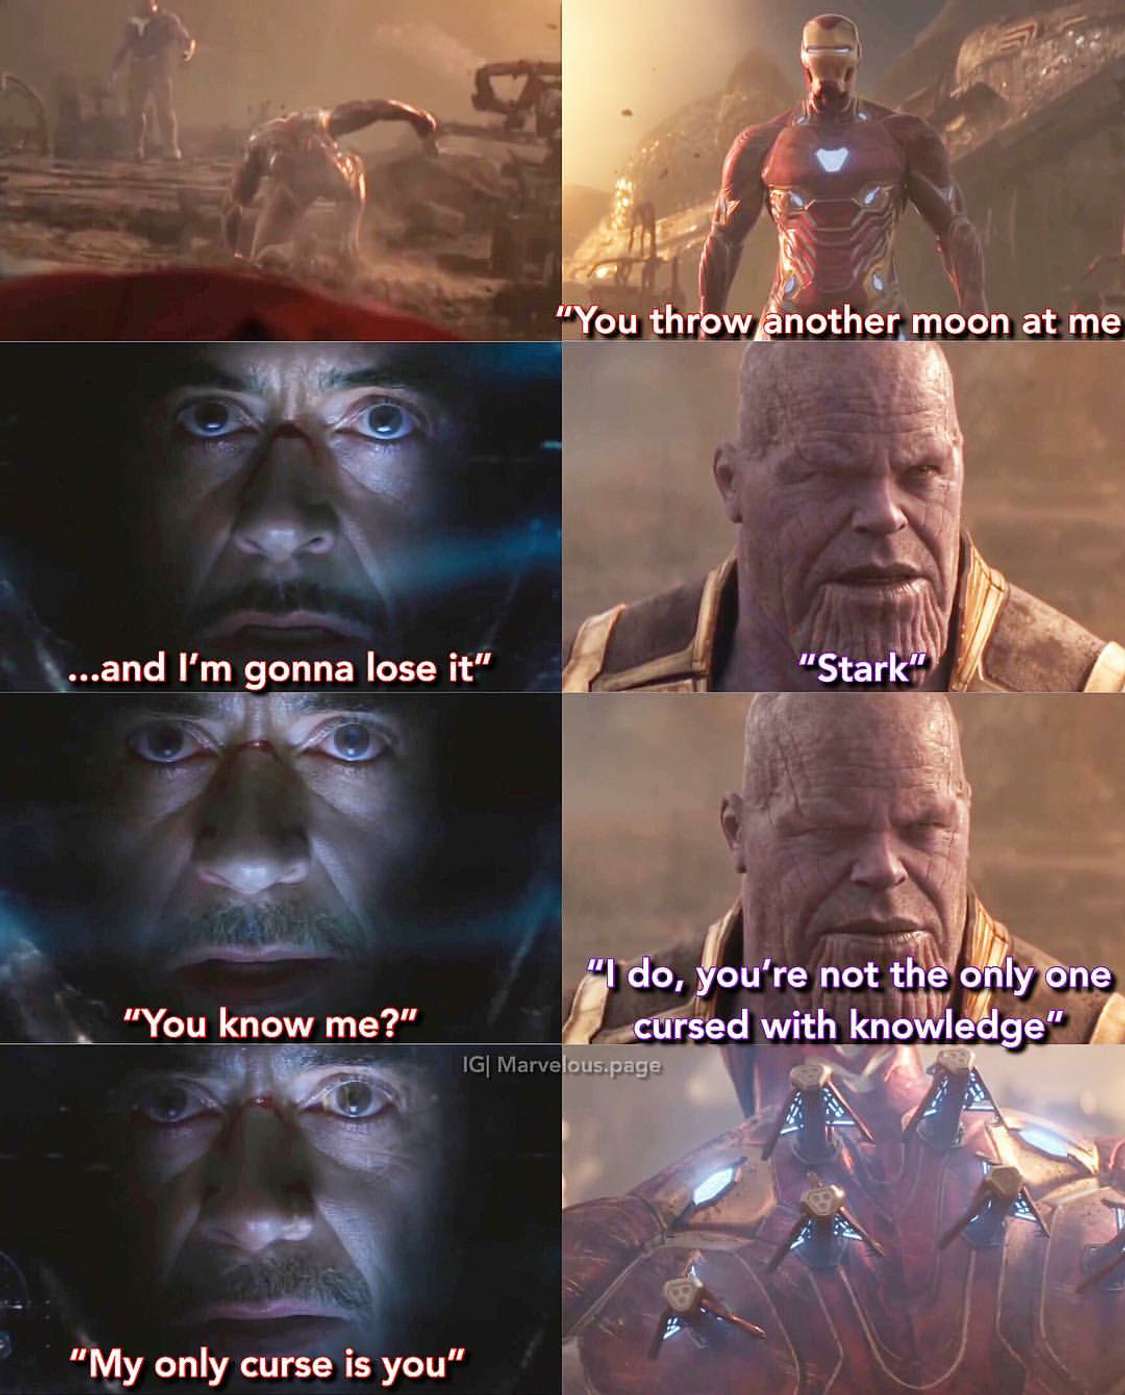 Iron-Man on Iron-Man